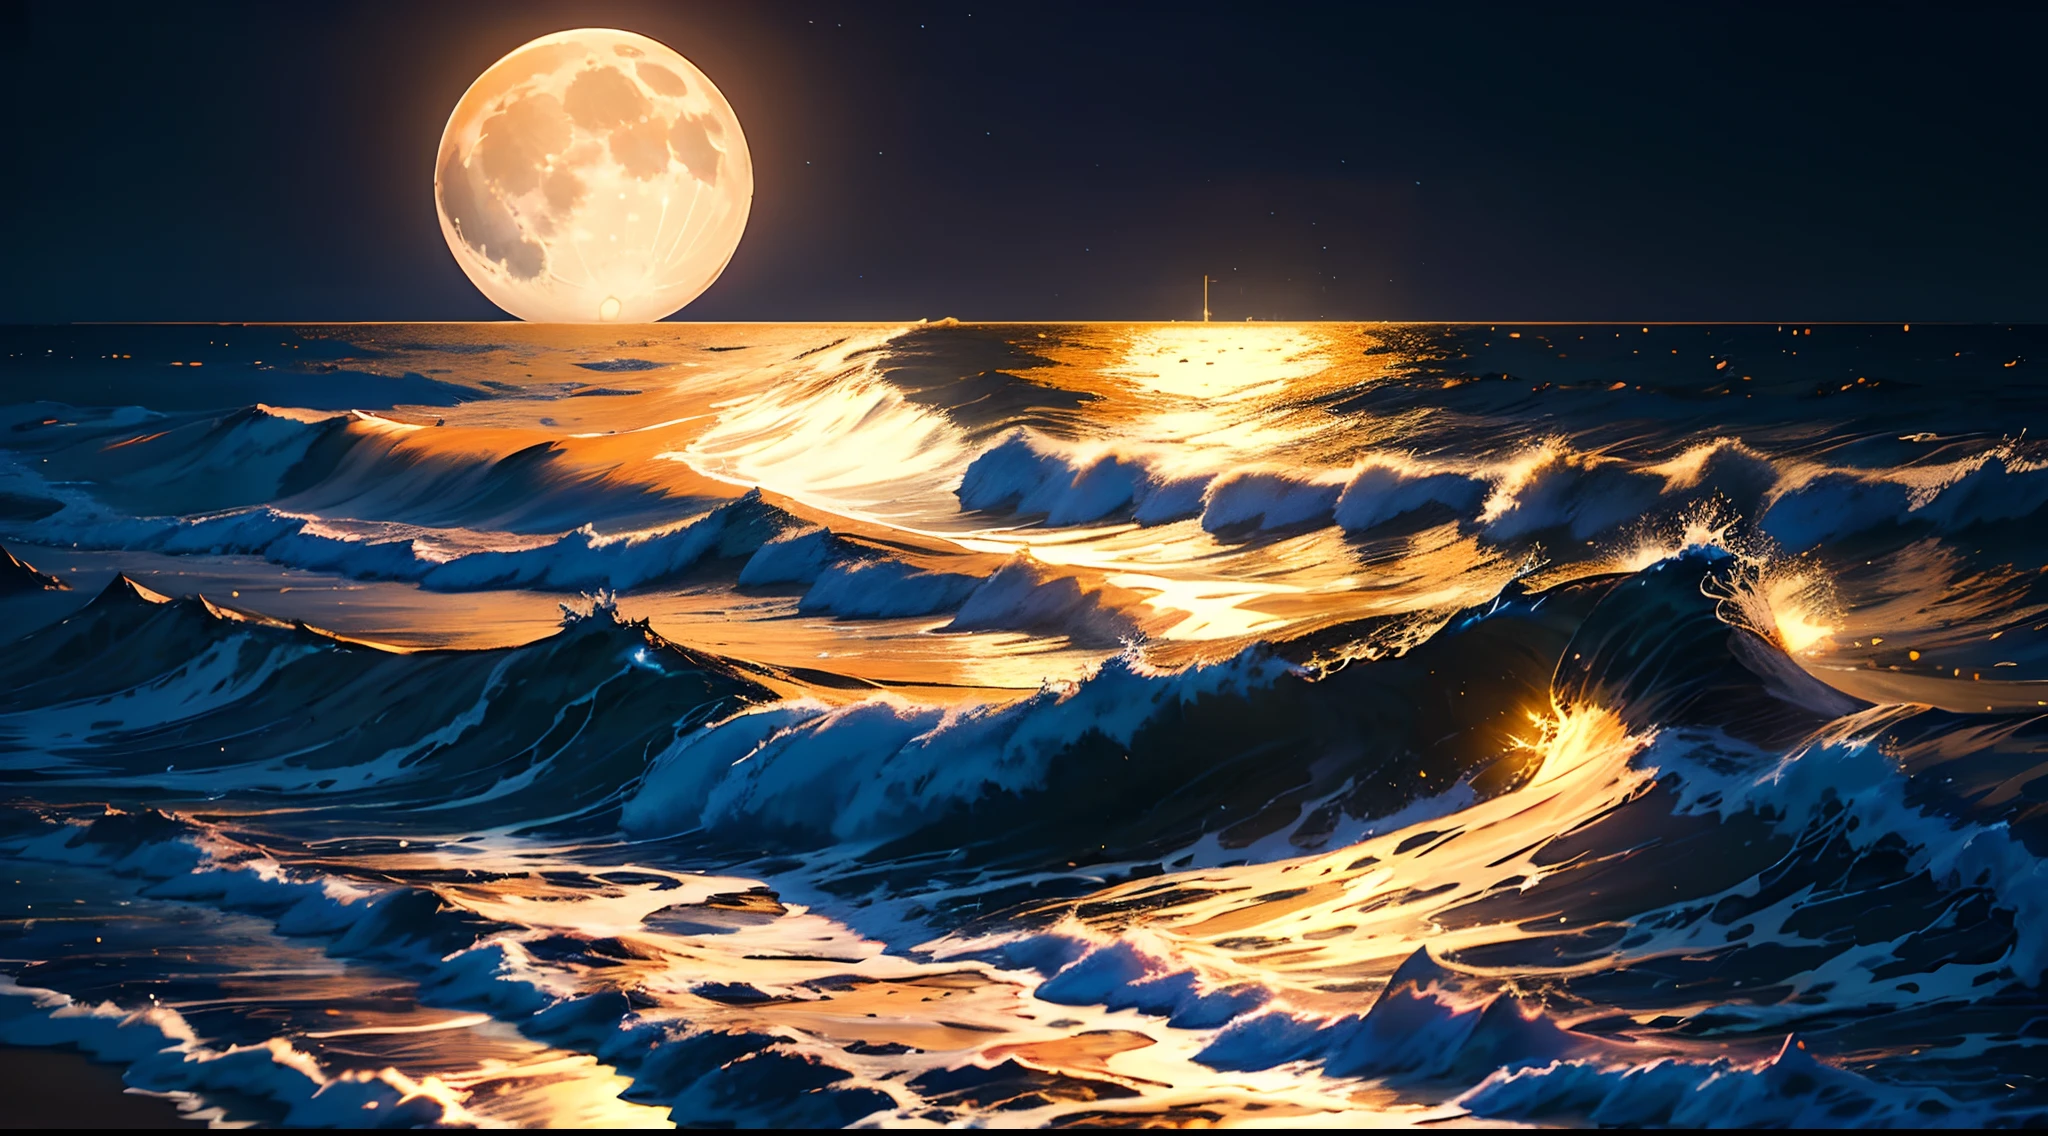 (noite de lua cheia),(na praia,Ondas quebrando),(iluminação dramática),(silhuetas),(areia cintilante),(ambiente tranquilo e relaxante), Centenas de lanternas de papel, muitas lanternas lindas de papel, lua enorme